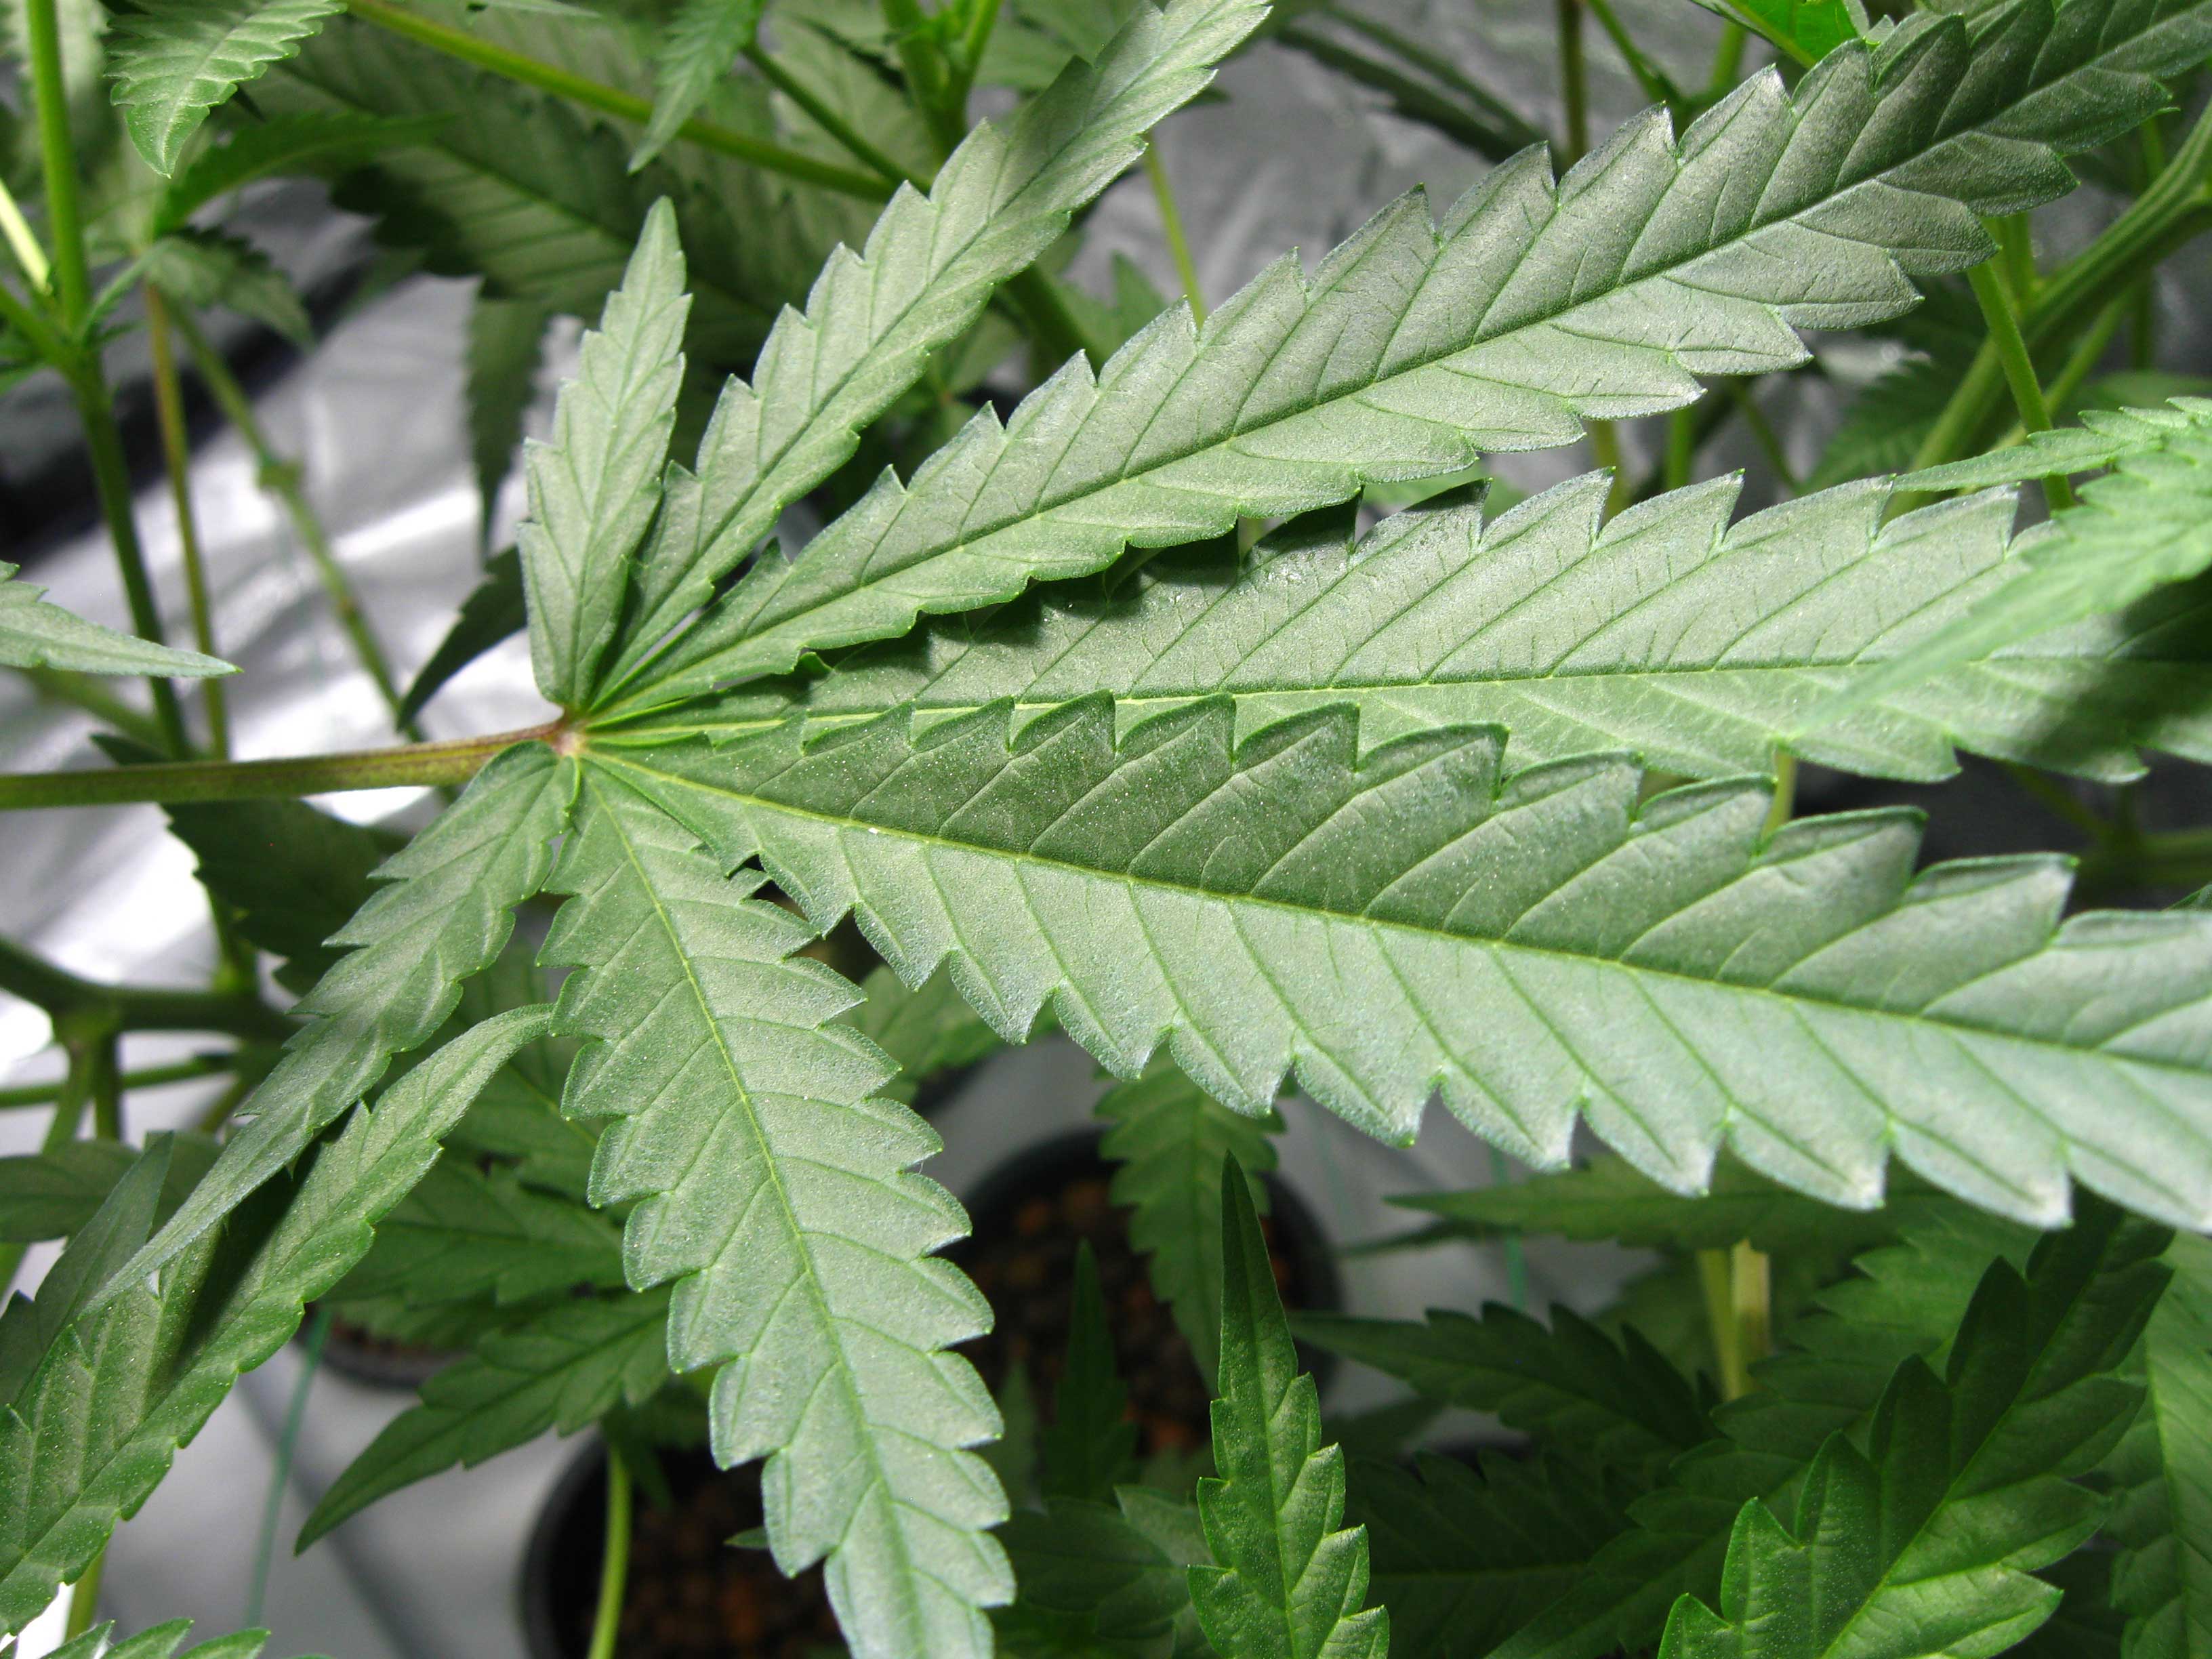 https://www.growweedeasy.com/wp-content/uploads/2010/05/healthy-marijuana-leaf.jpg